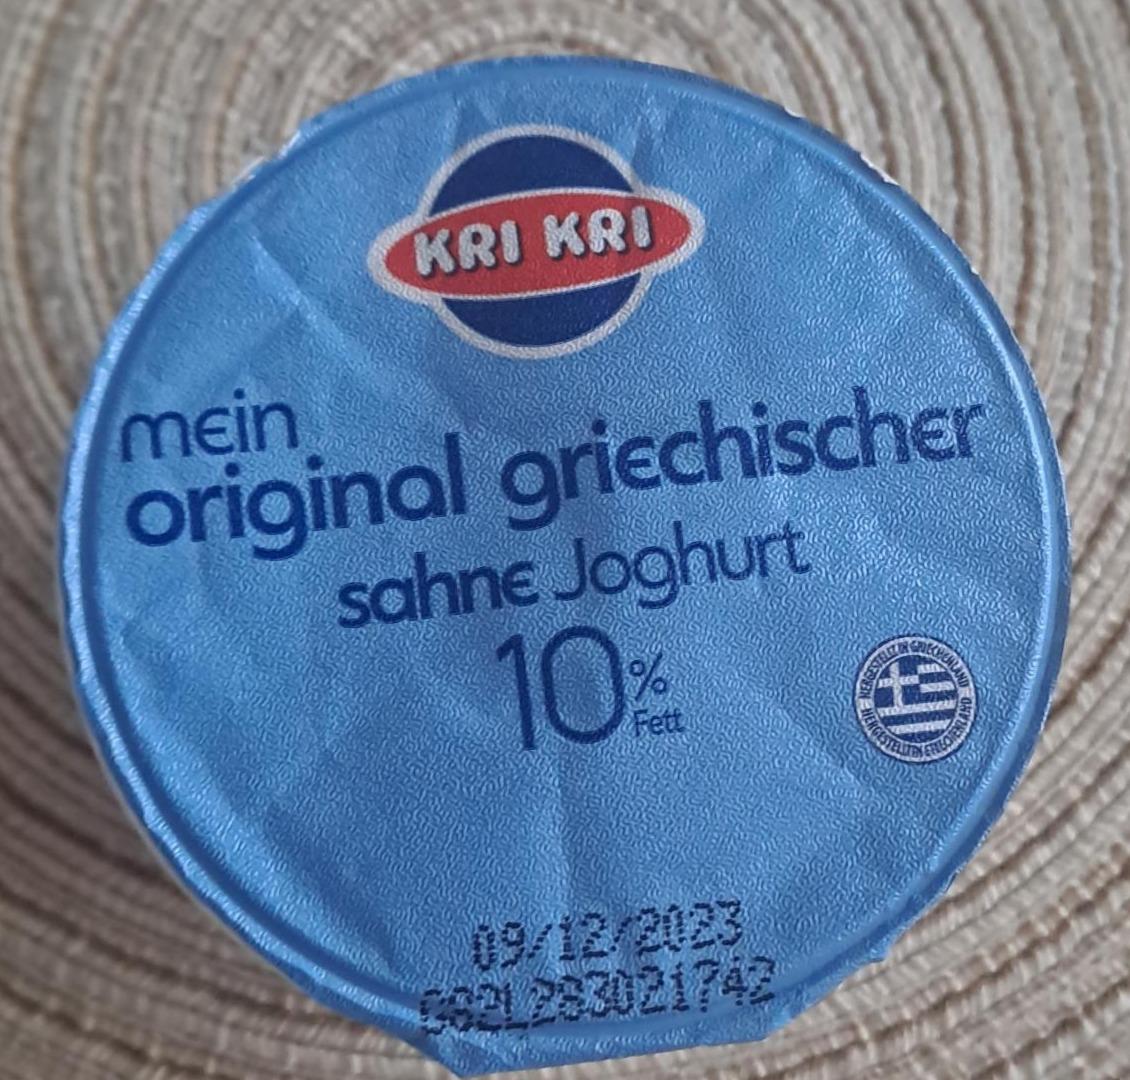 Fotografie - Mein Original Griechischer Sahne Joghurt 10% Kri Kri